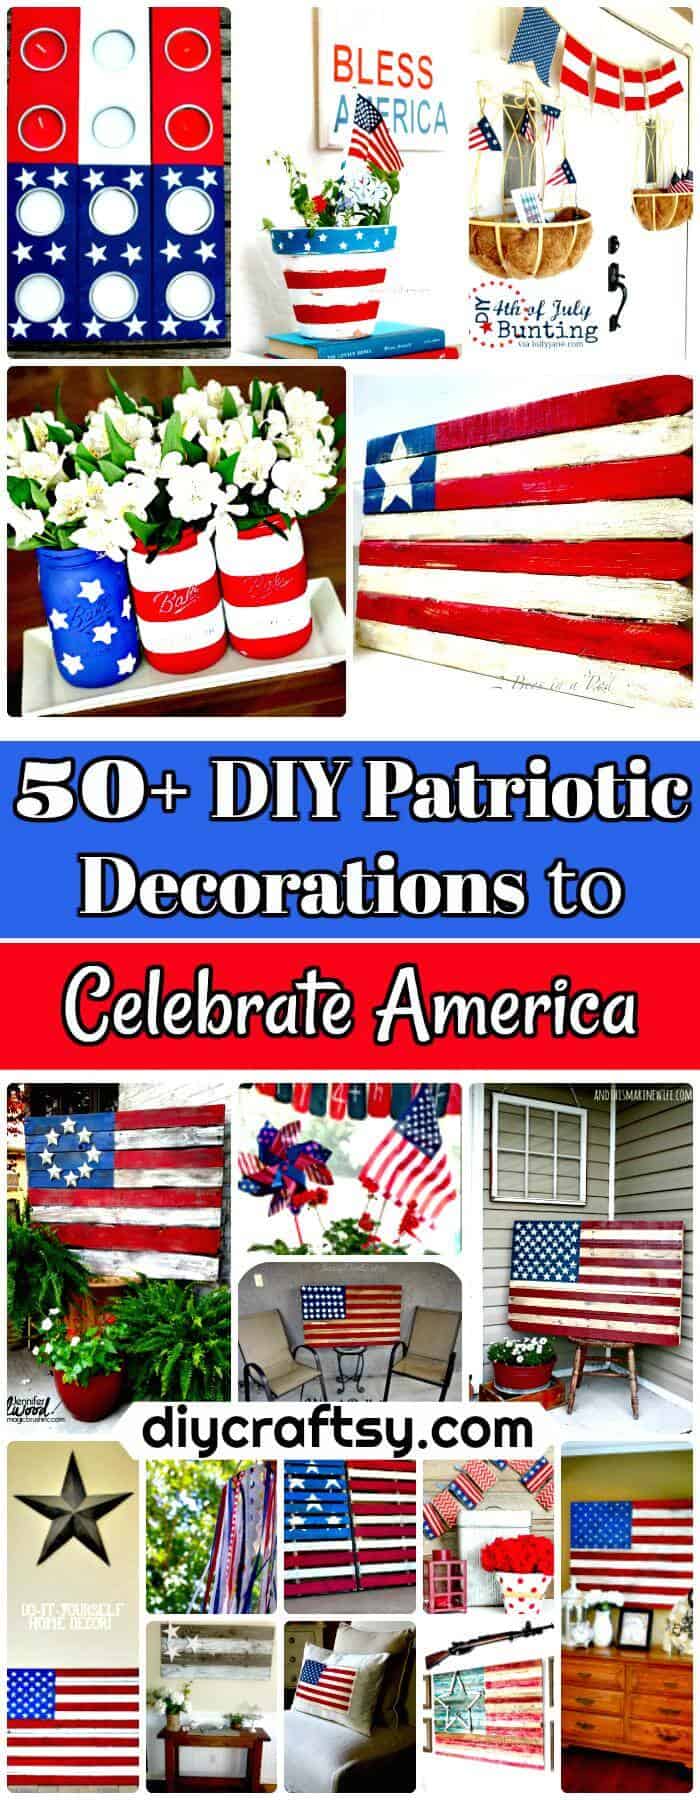 Más de 50 decoraciones patrióticas de bricolaje para celebrar América